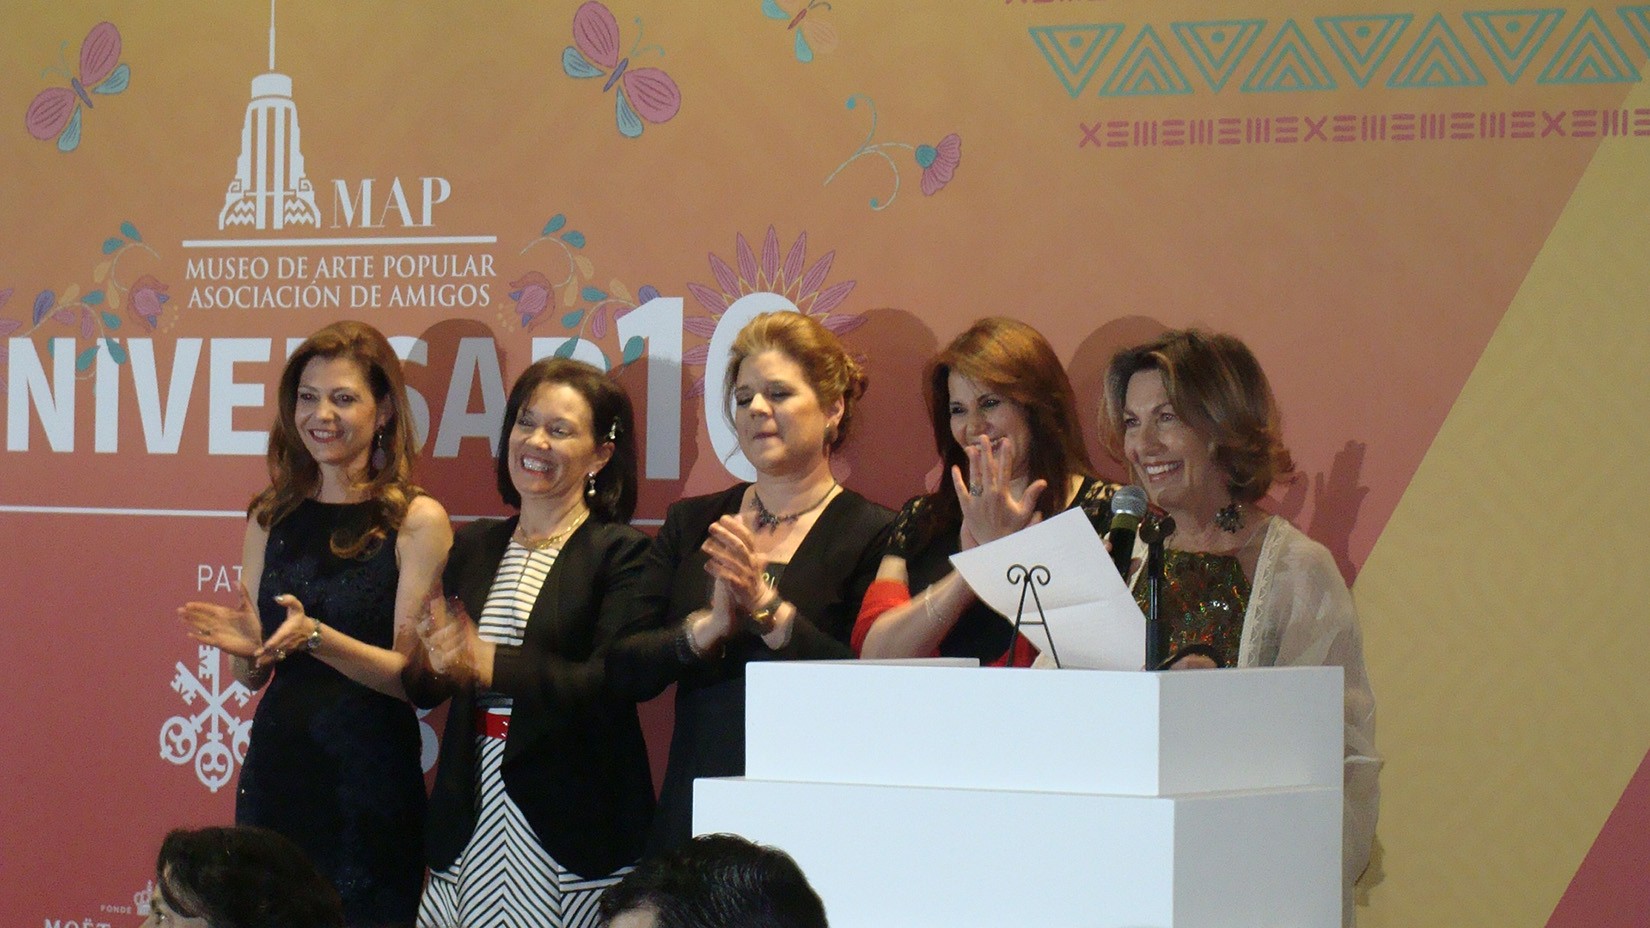 Fernanda Suárez, Cecilia Moctezuma, Sonya Santos, María Esther Villar y Marie Thérèse Hermand de Arango en la cena del Décimo Aniversario del MAP. (Foto: AmigosMAP).